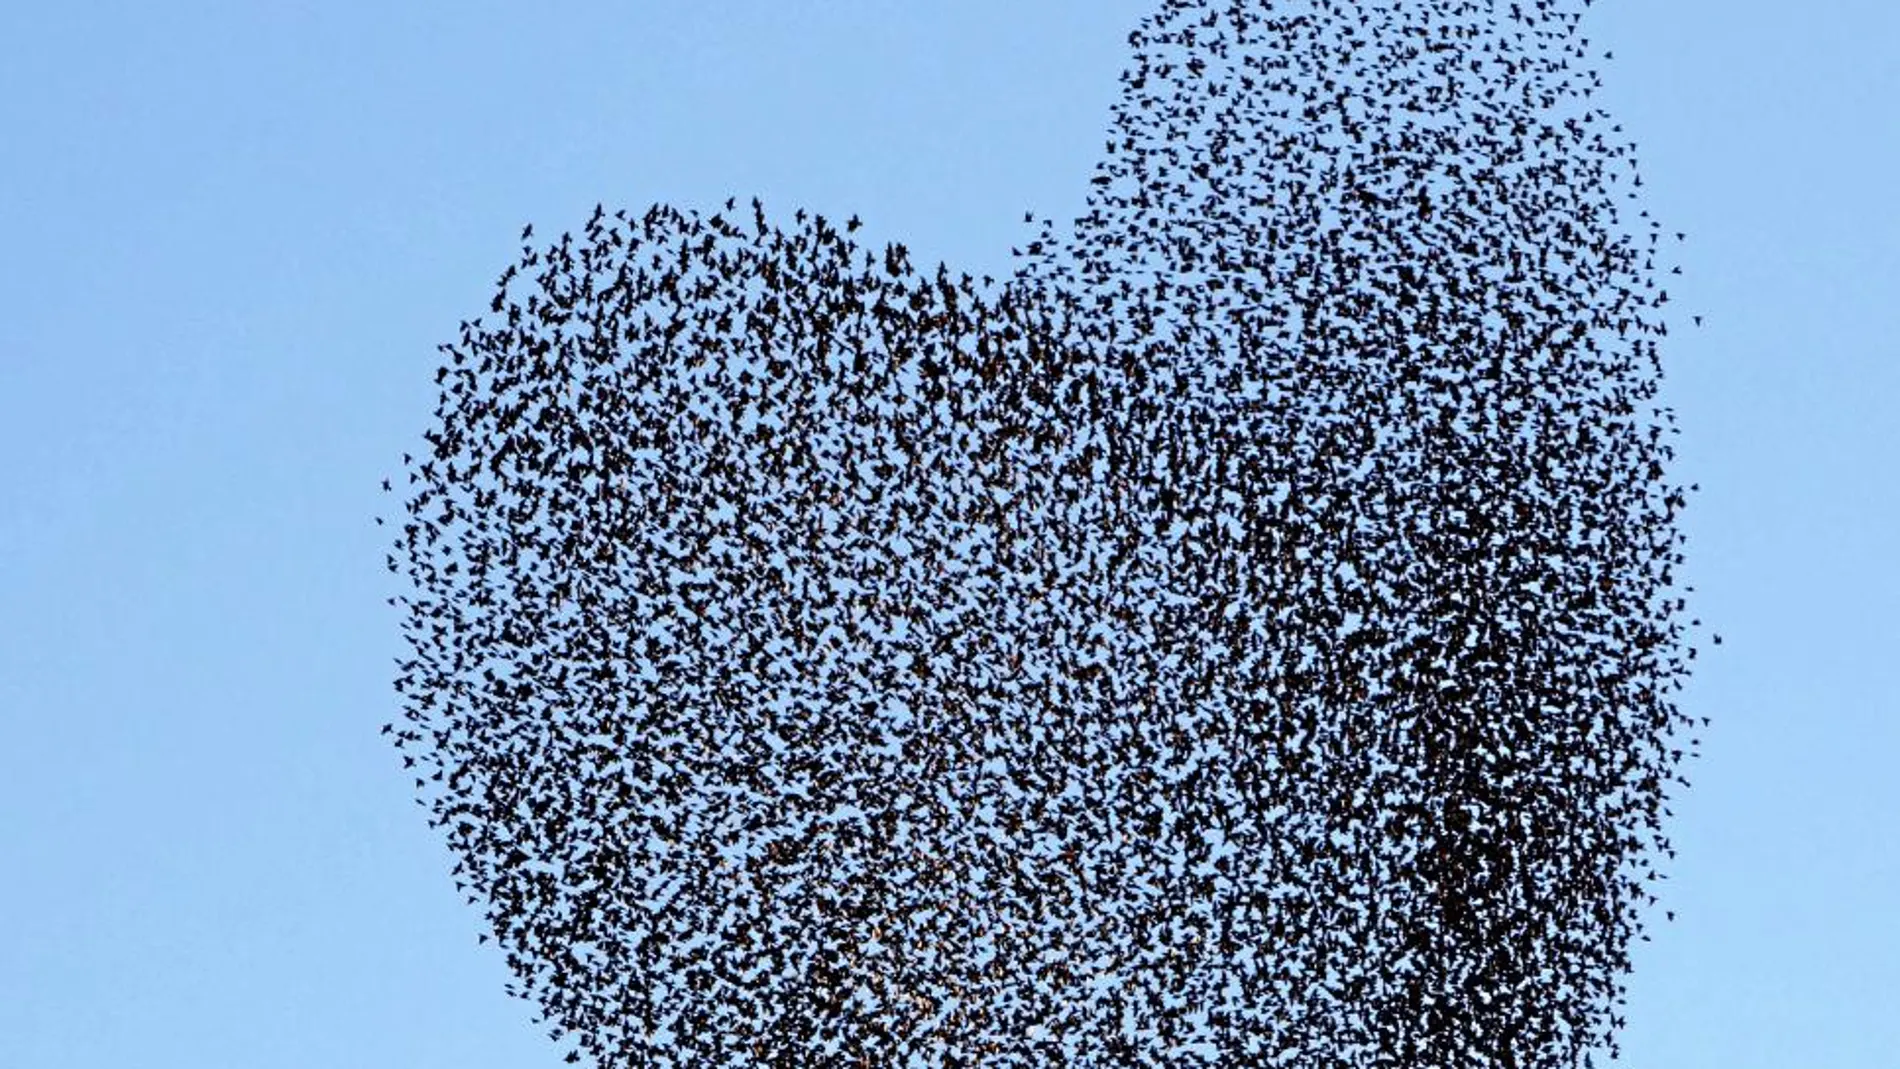 Una bandada de pájaros en pleno vuelo dibuja un corazón al cambiar su formación